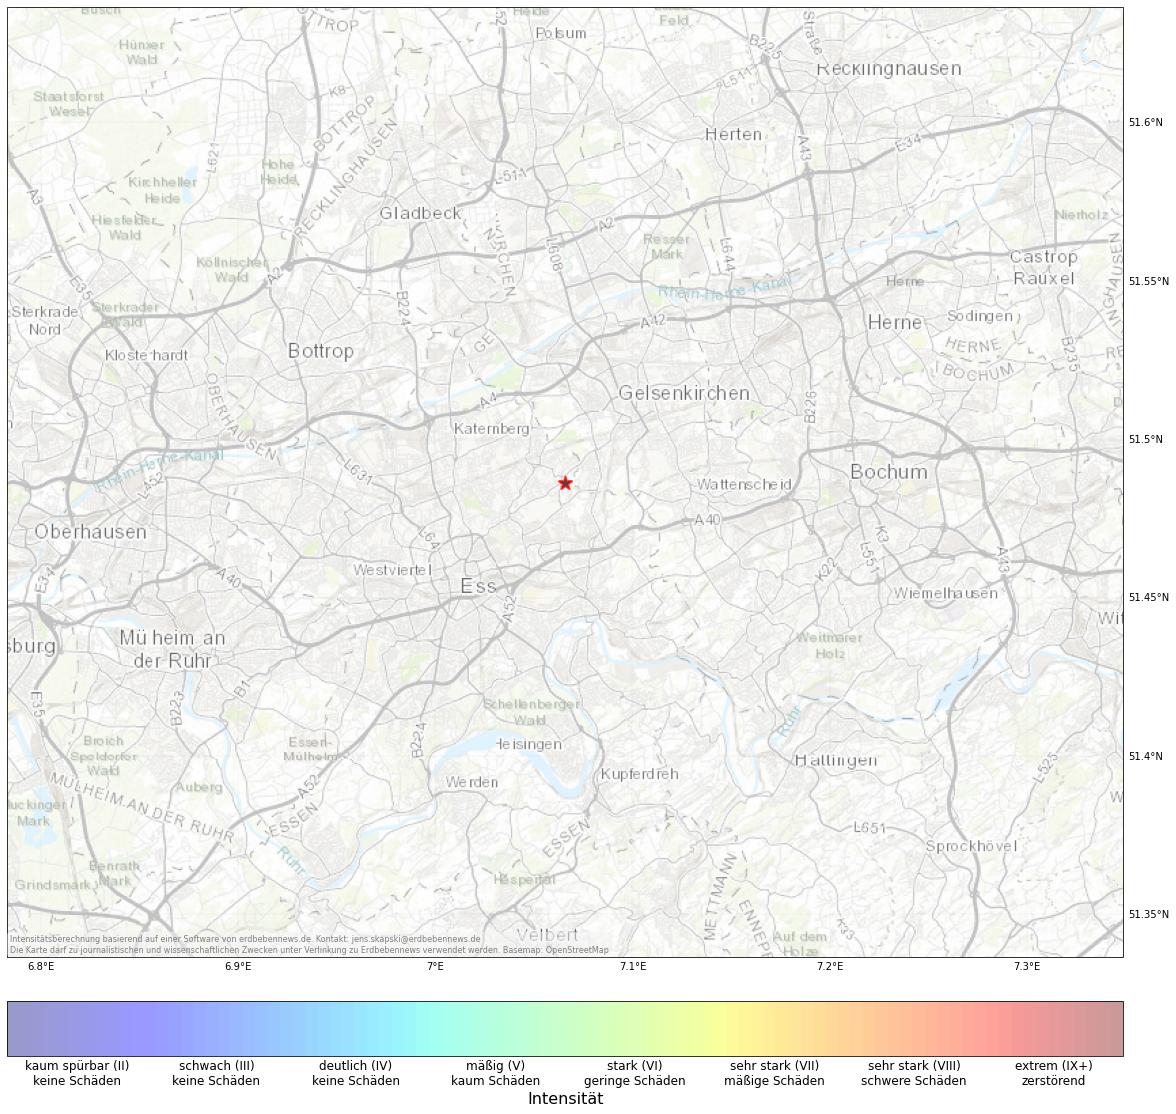 Berechnete Intensität (ShakeMap) des Erdbebens der Stärke 1.1 am 13. November, 04:37 in Deutschland